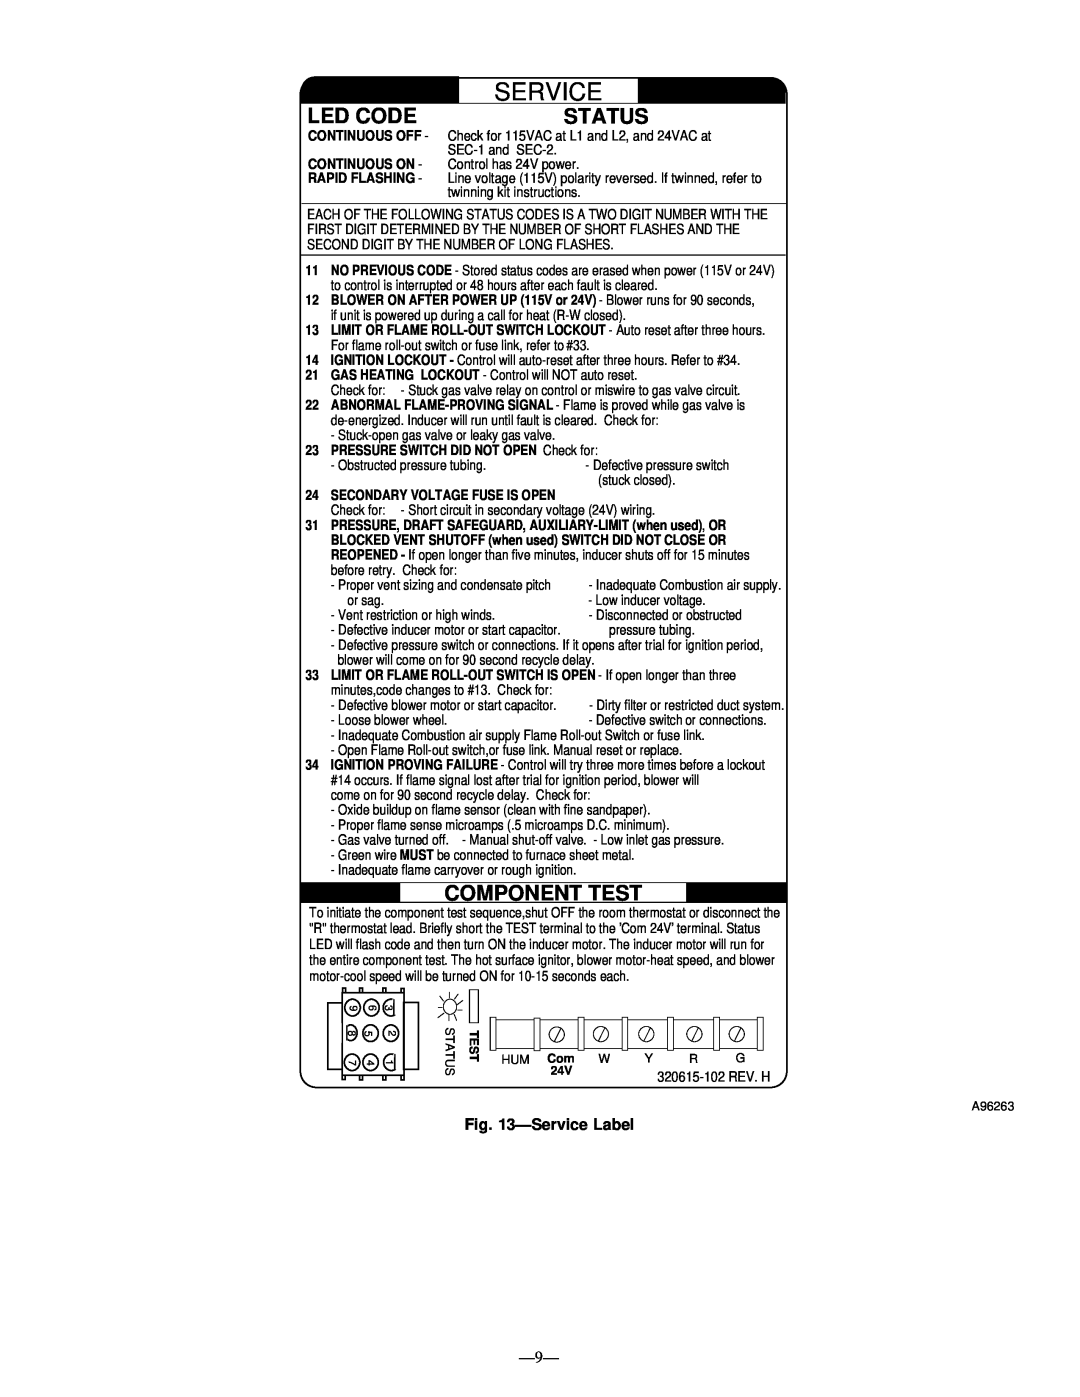 Bryant 383KAV instruction manual Led Code, Status, Component Test, ÐService Label 